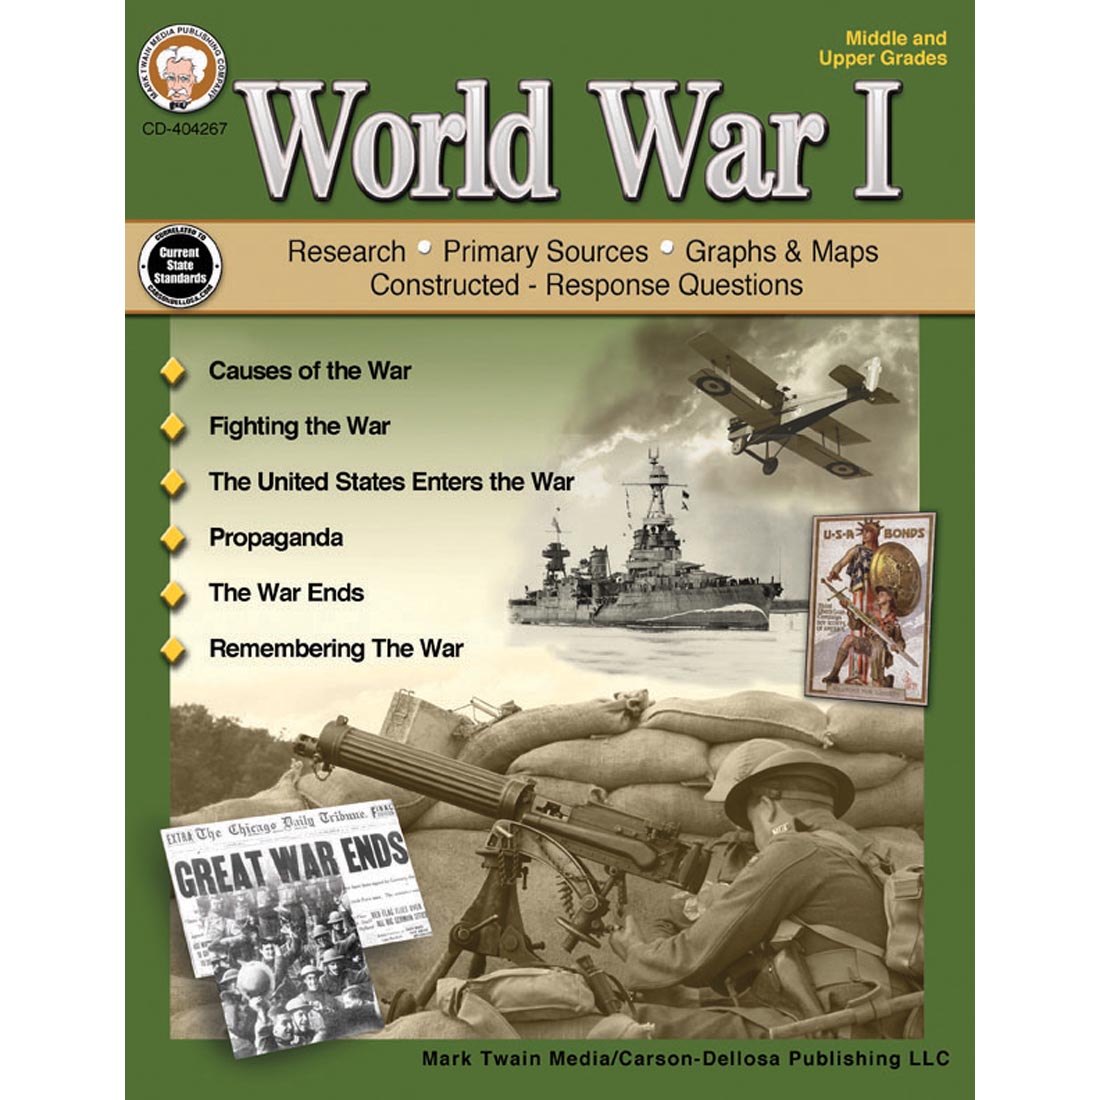 World War I by Mark Twain Media